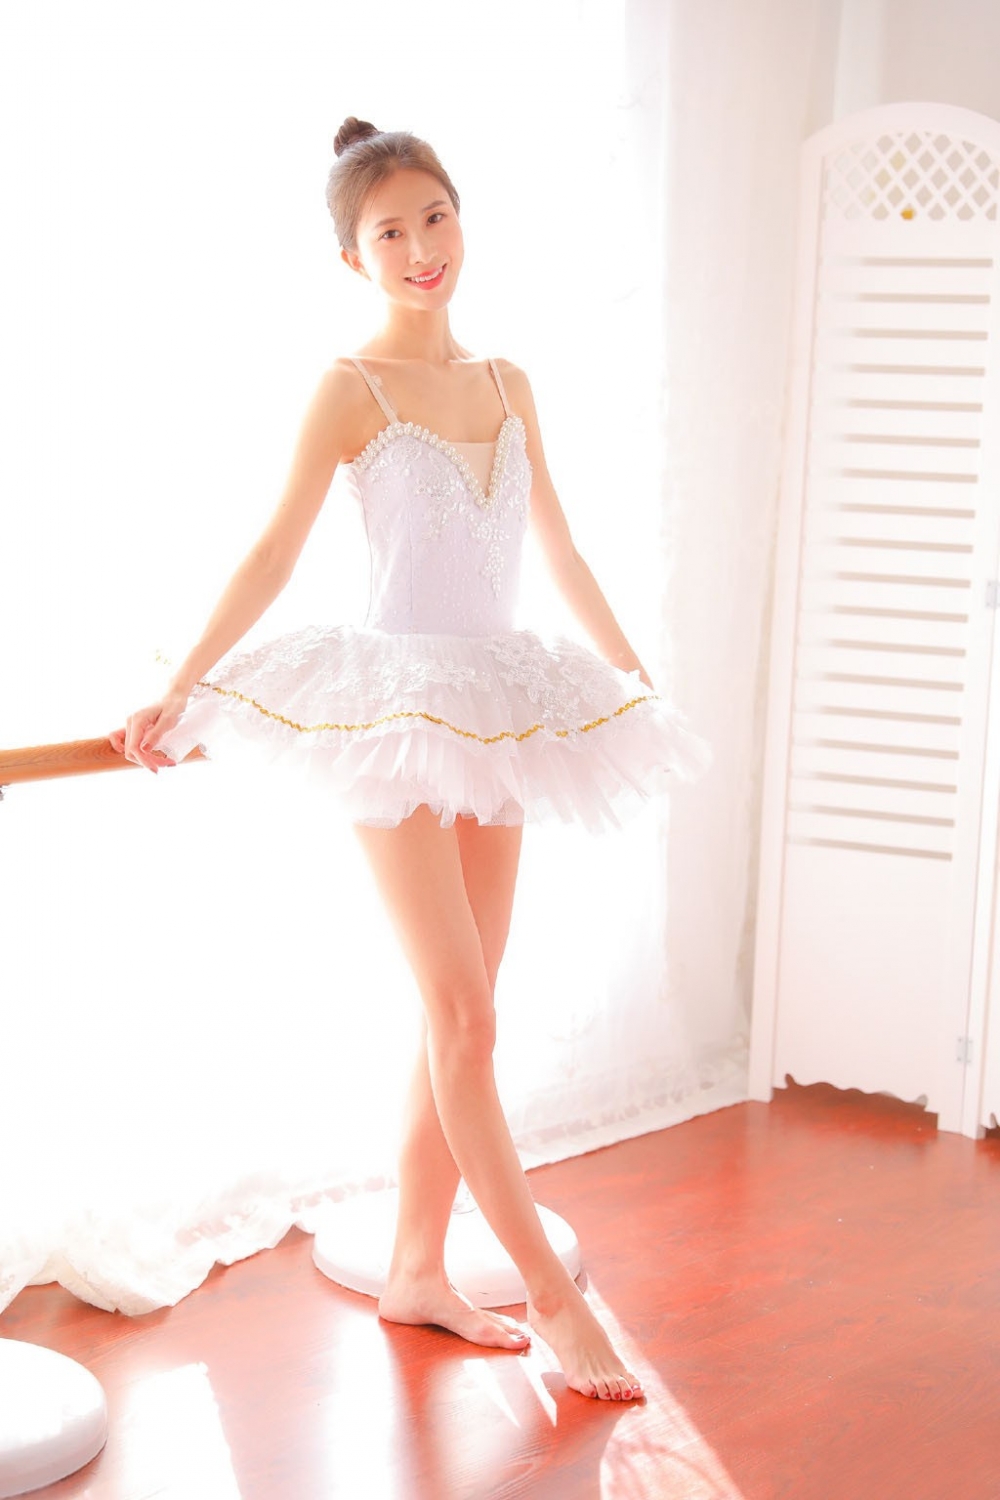 可爱清纯芭蕾舞女孩妖娆美腿裸足写真 